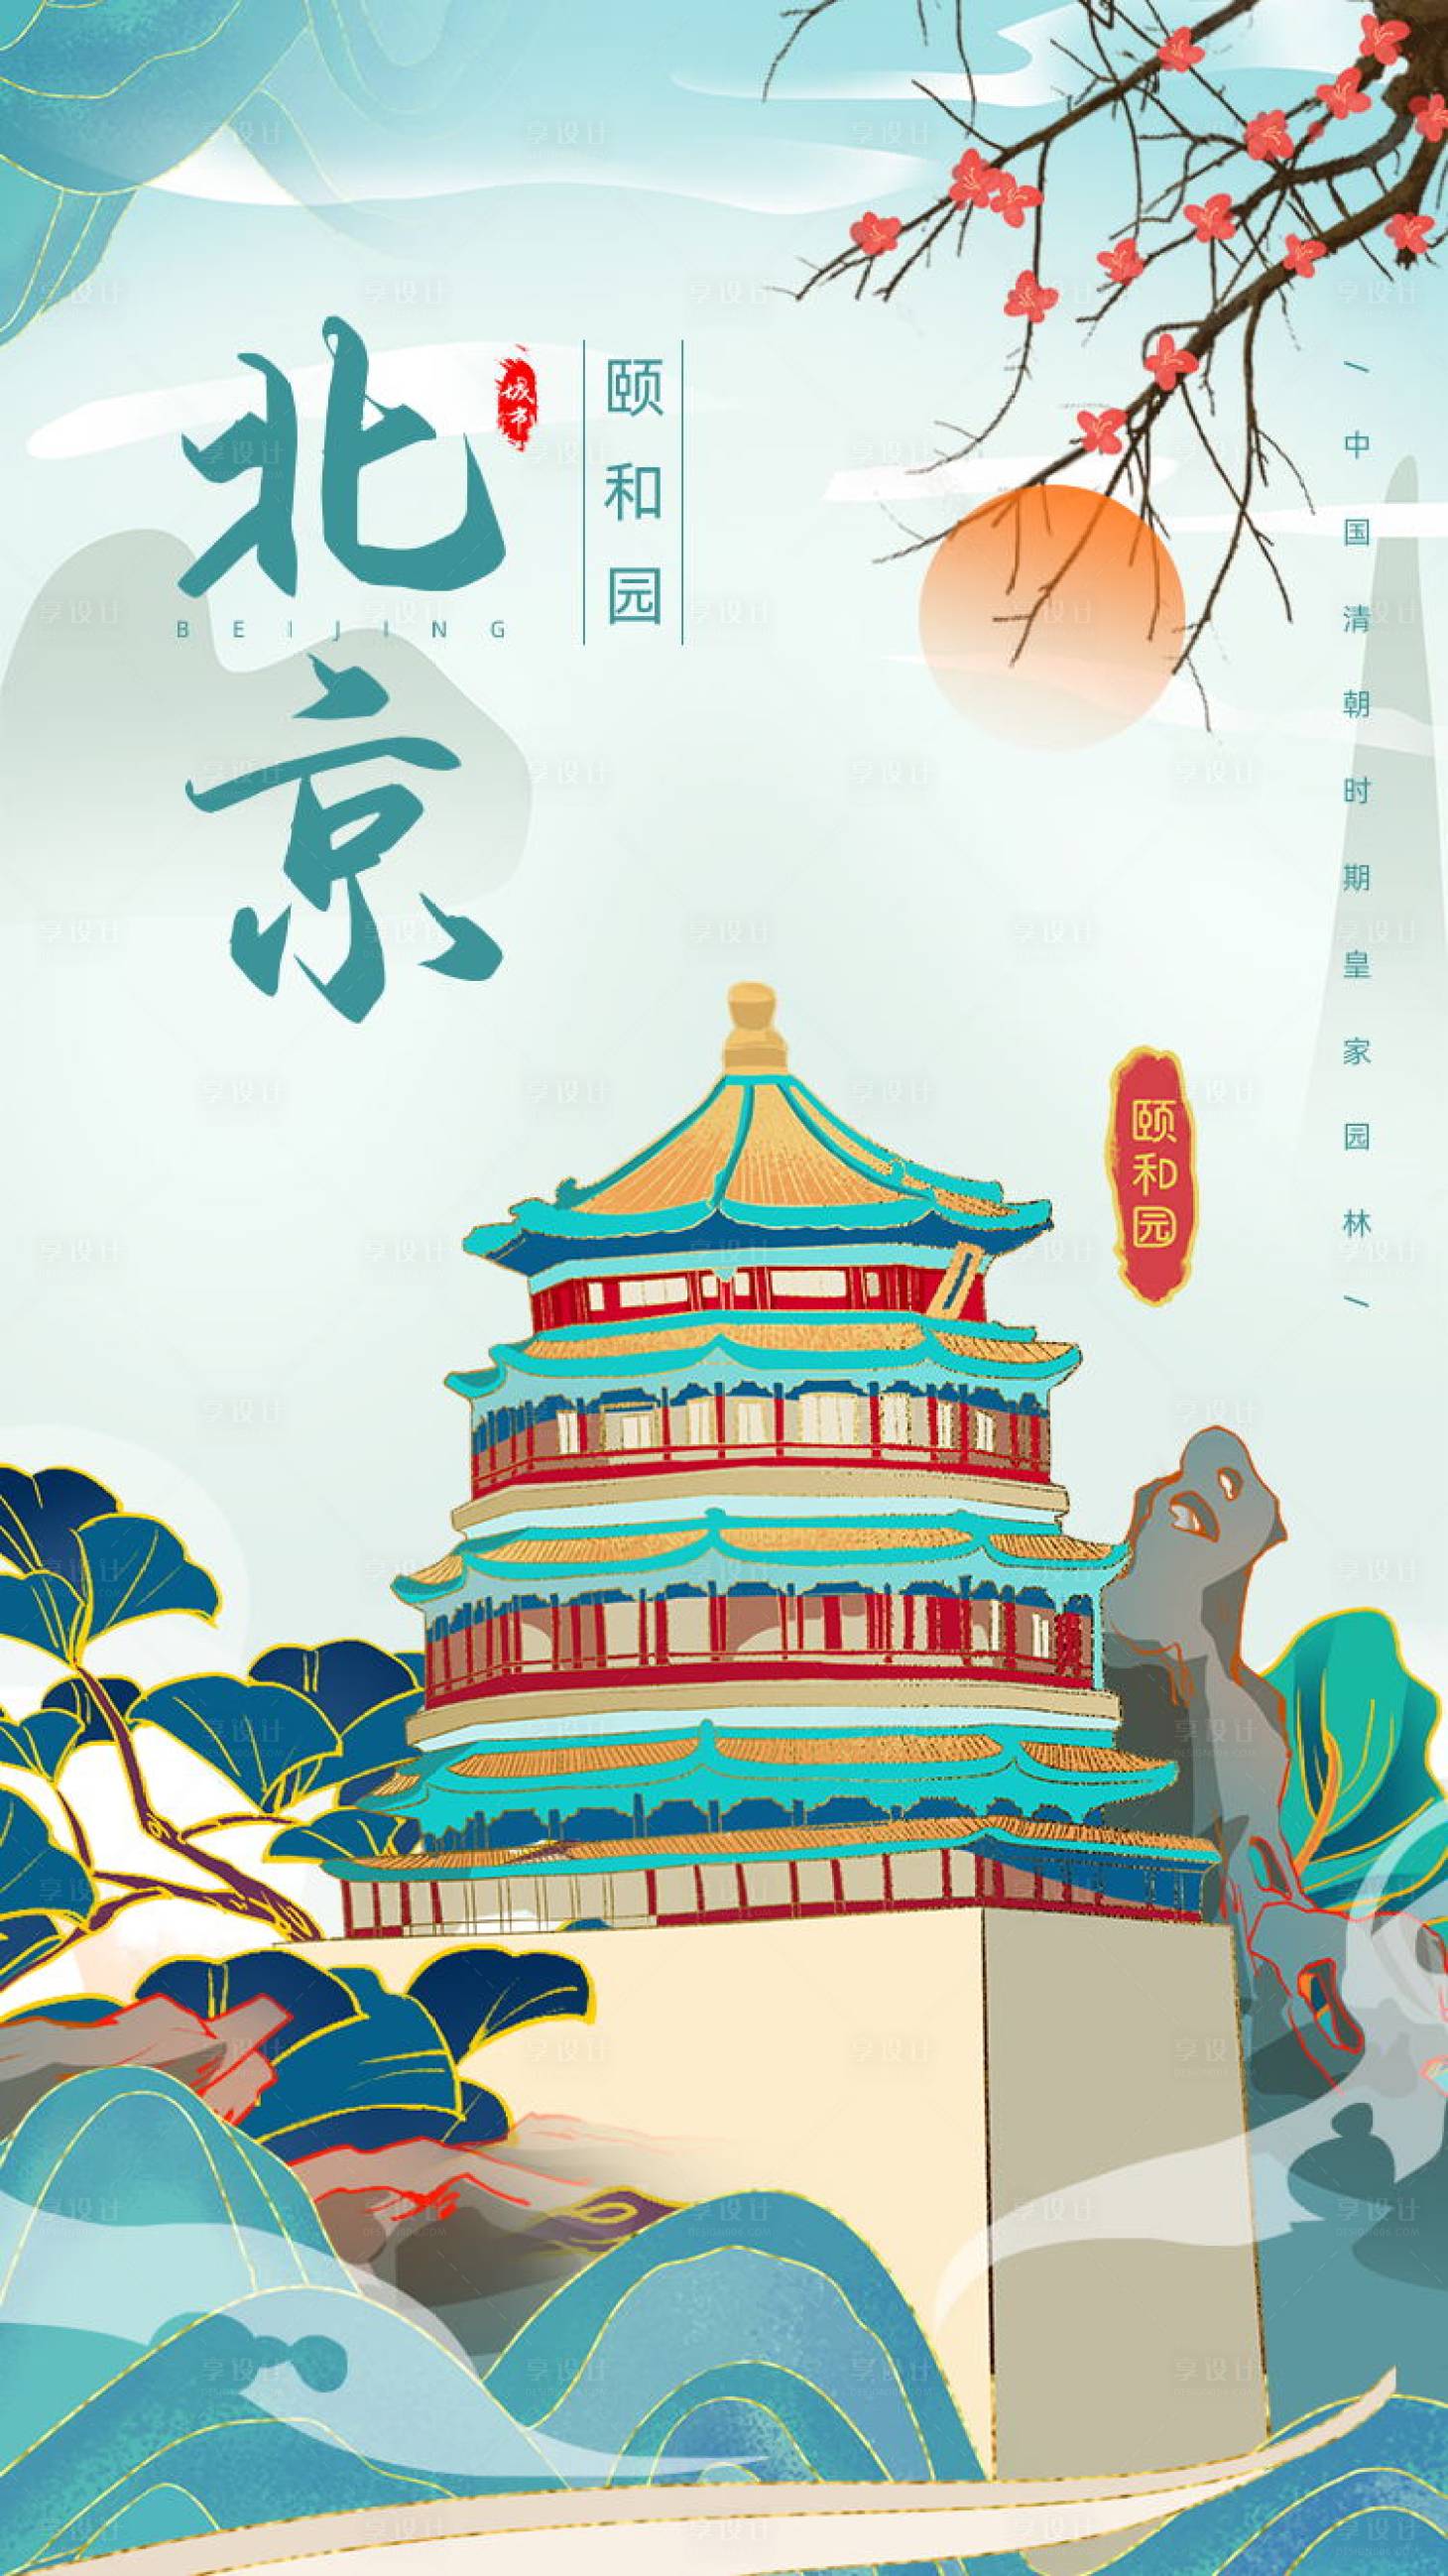 北京宣传海报设计背景素材免费下载 - 觅知网